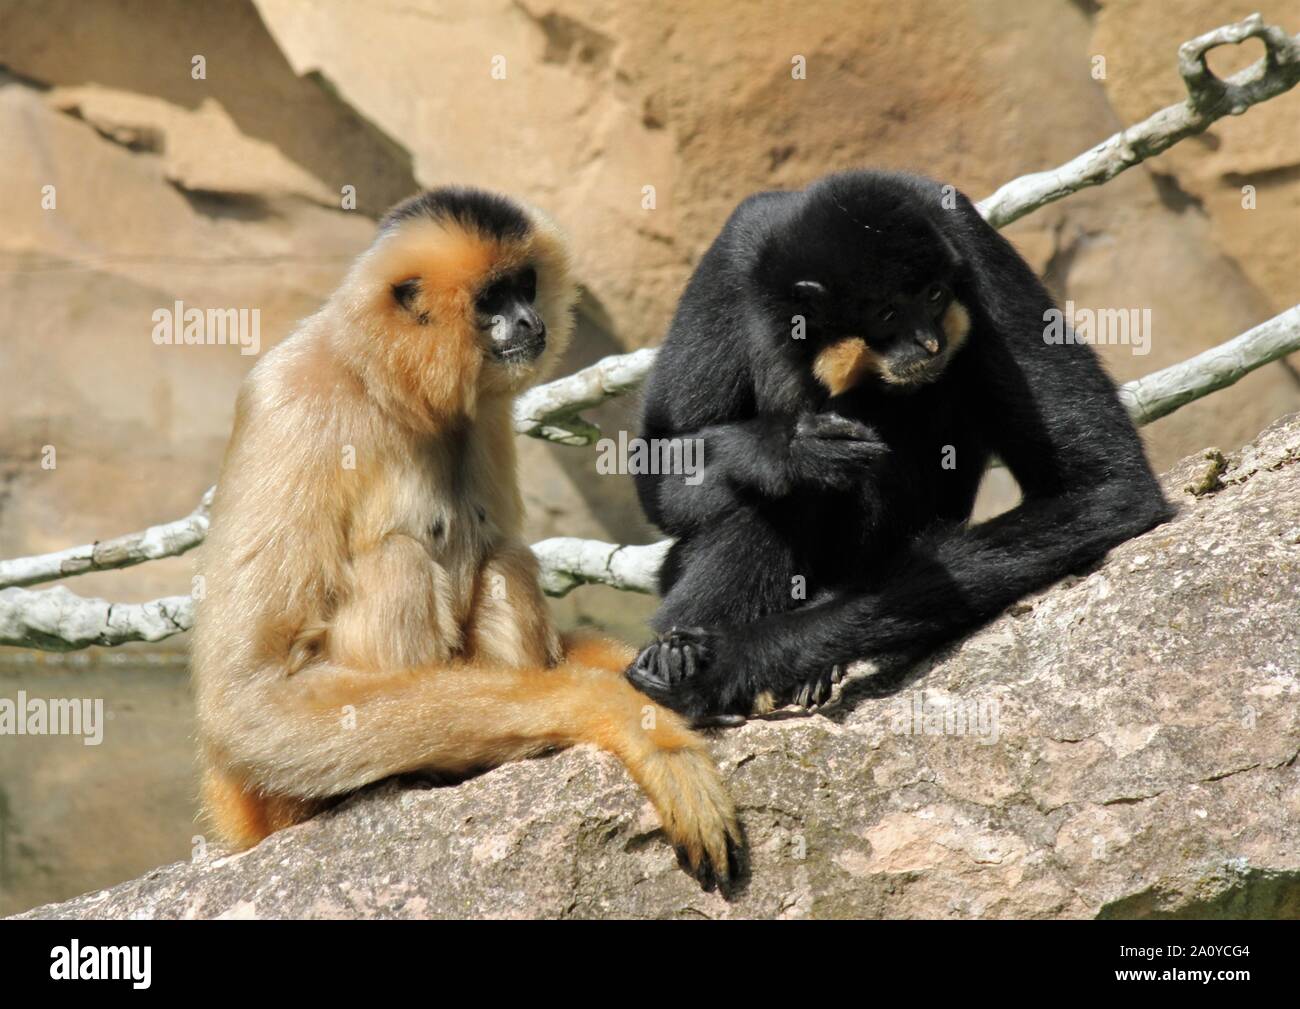 Primates, Animals, Pair Stock Photo